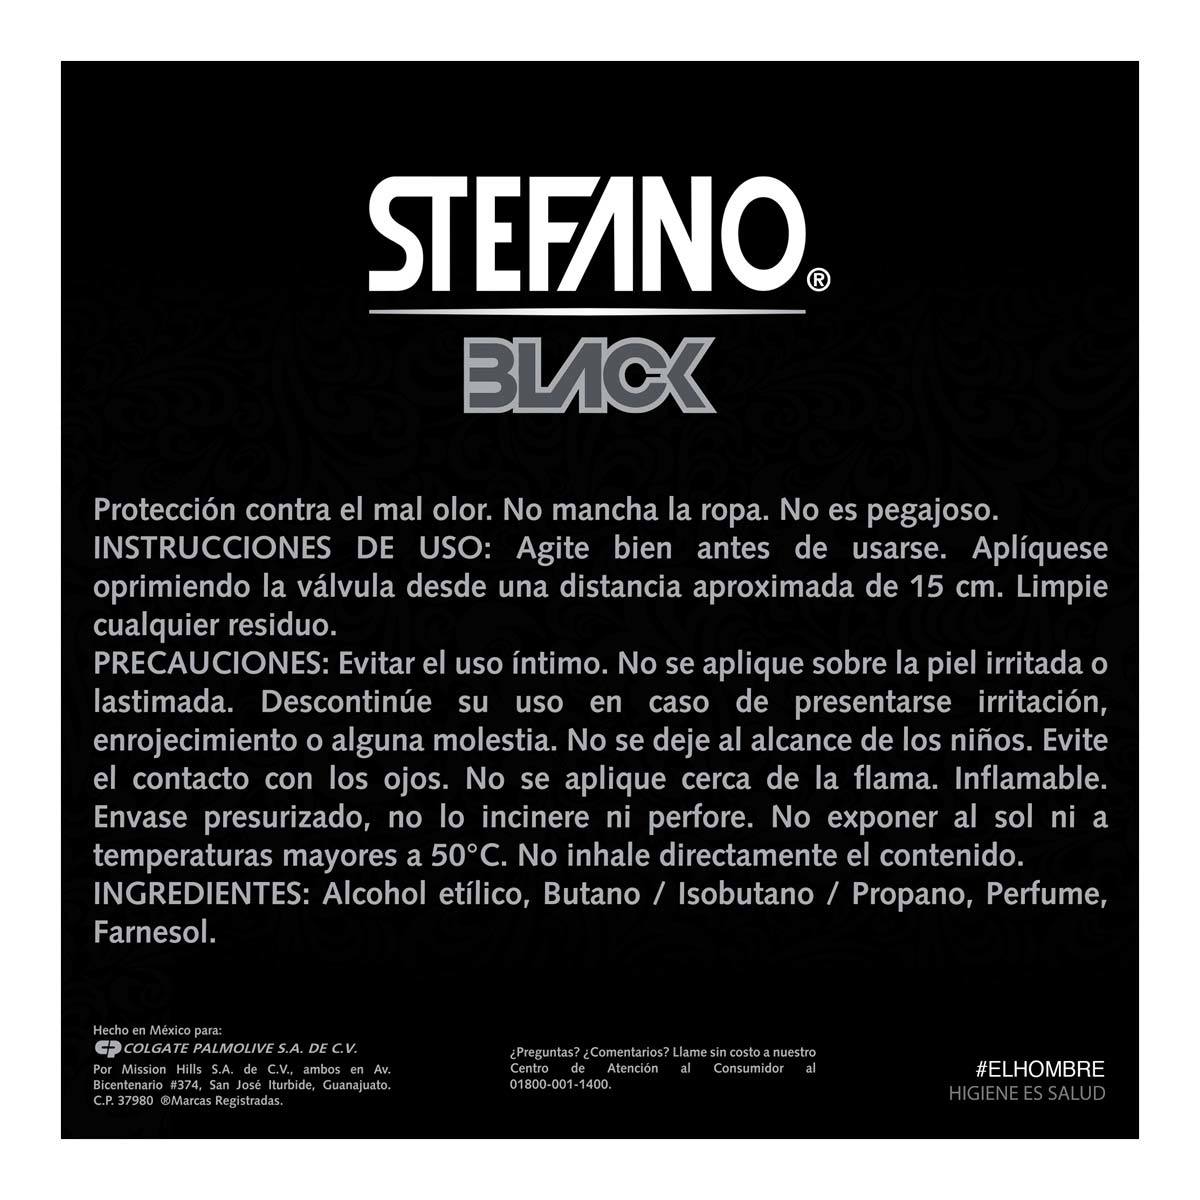 Desodorante Stefano Black en Aerosol de 159 ml